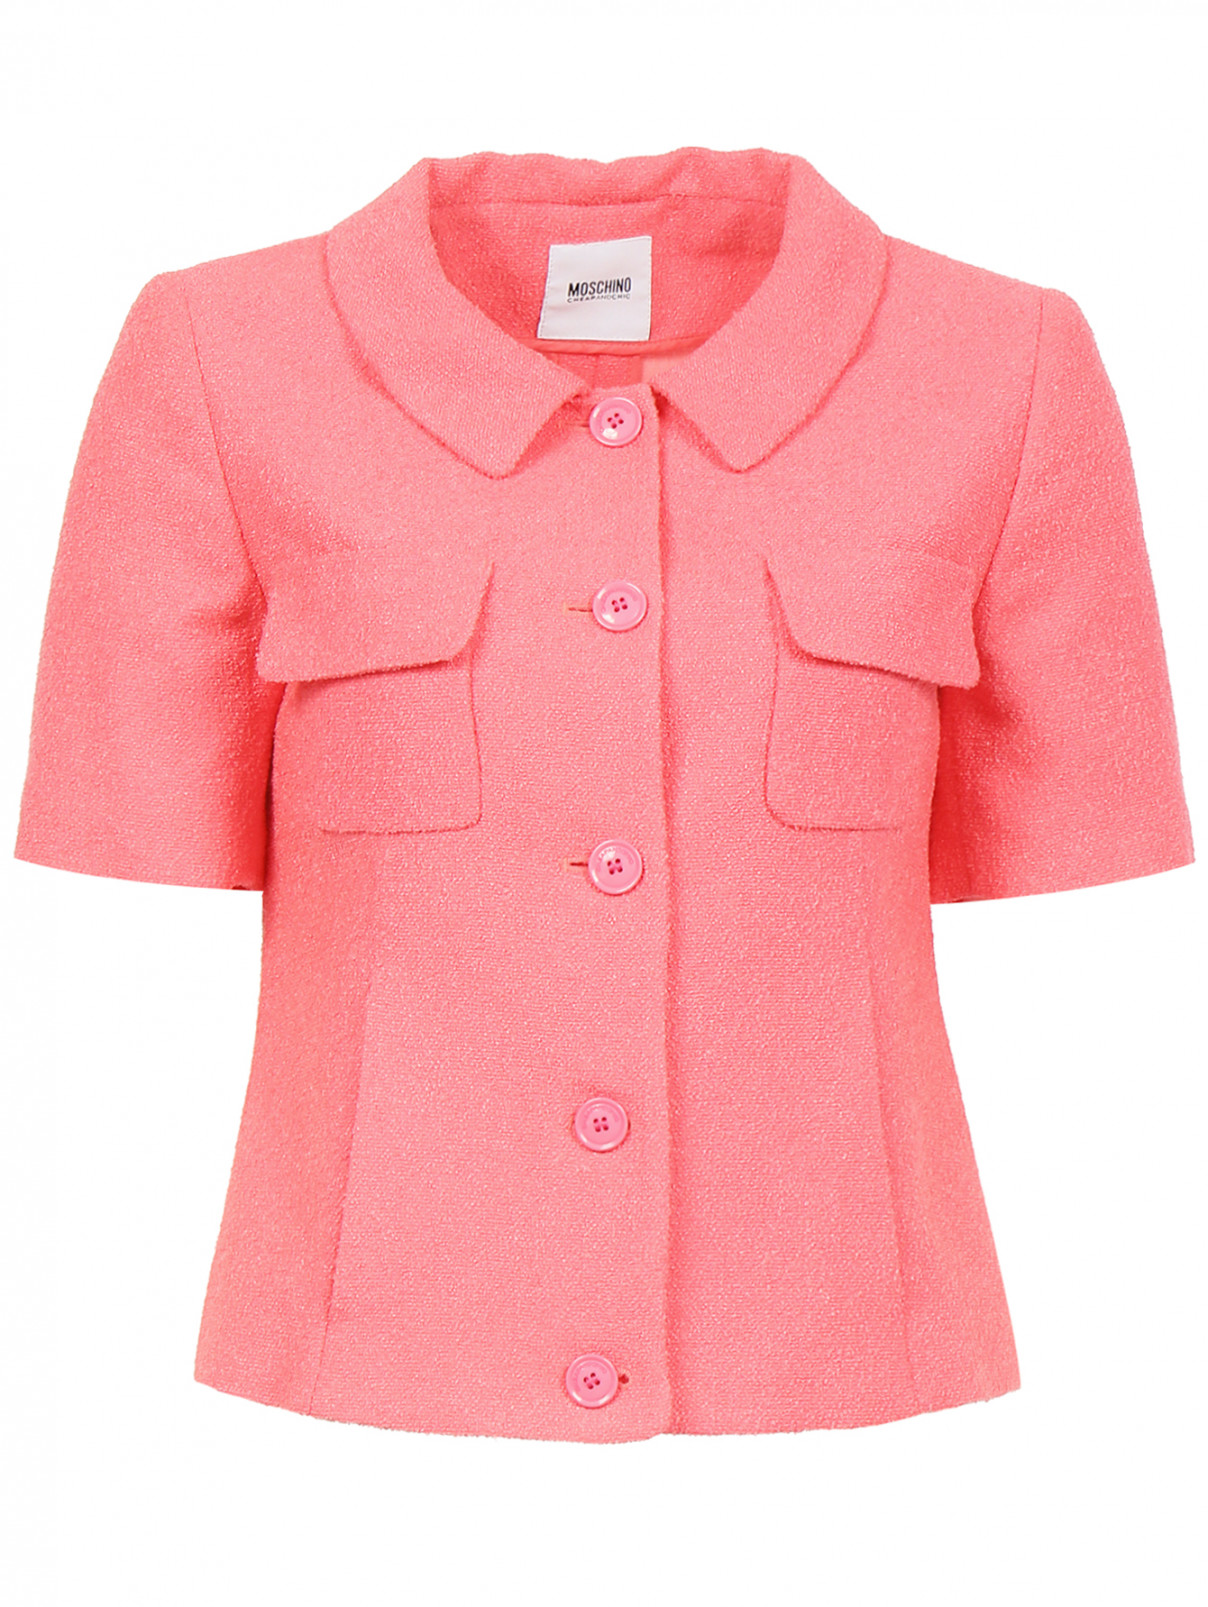 Жакет с коротким рукавом и накладными карманами на груди Moschino Cheap&Chic  –  Общий вид  – Цвет:  Розовый